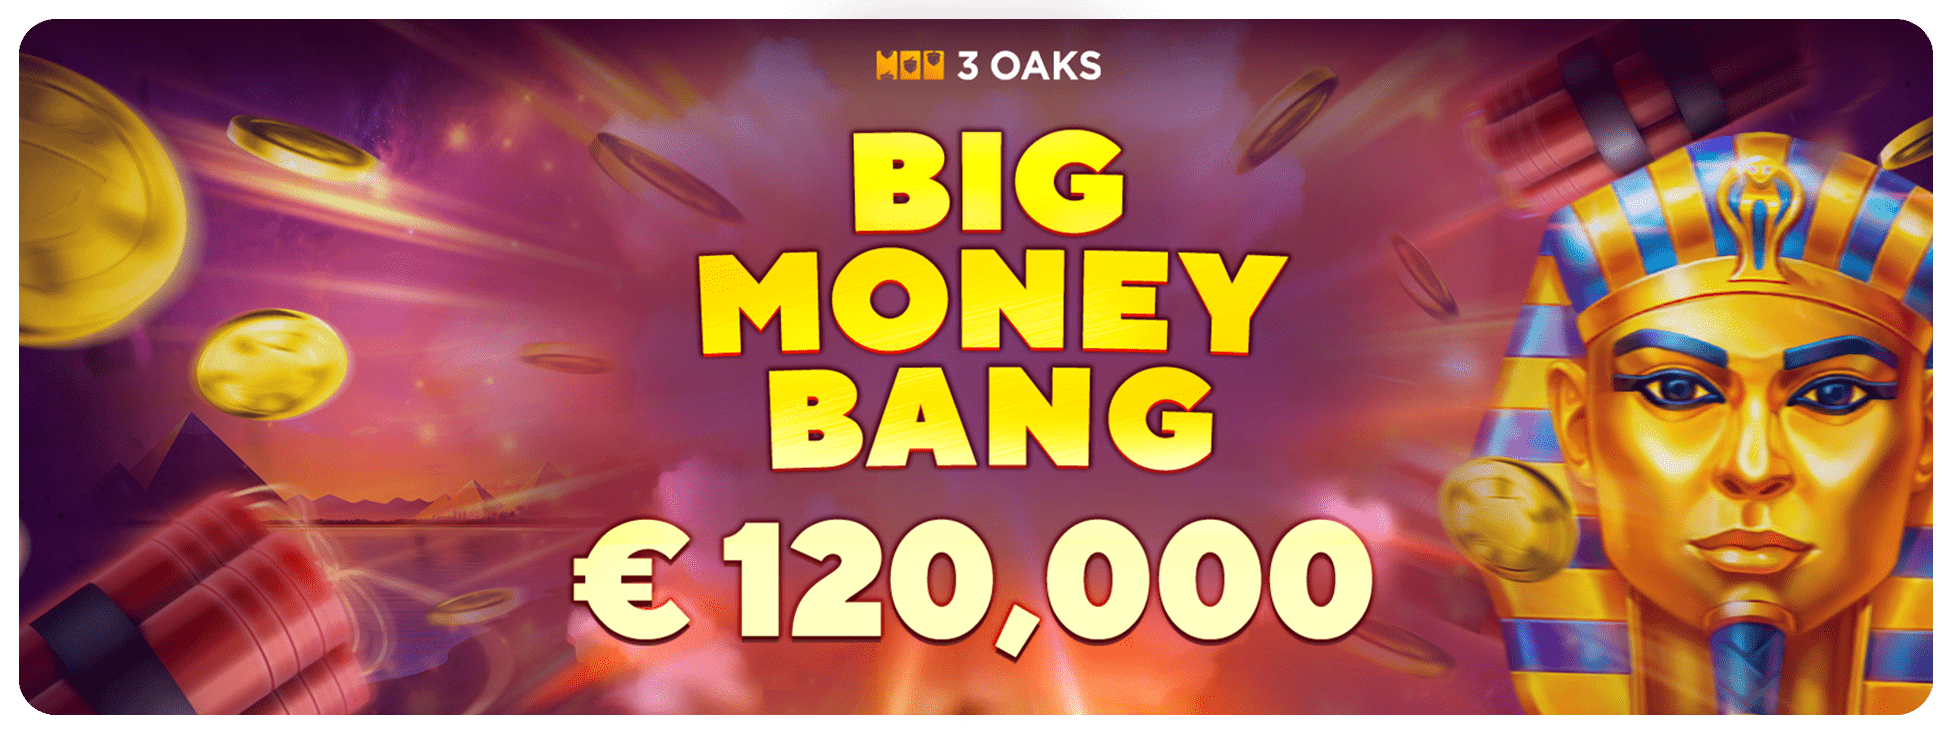 3Oaks Big Money Bang